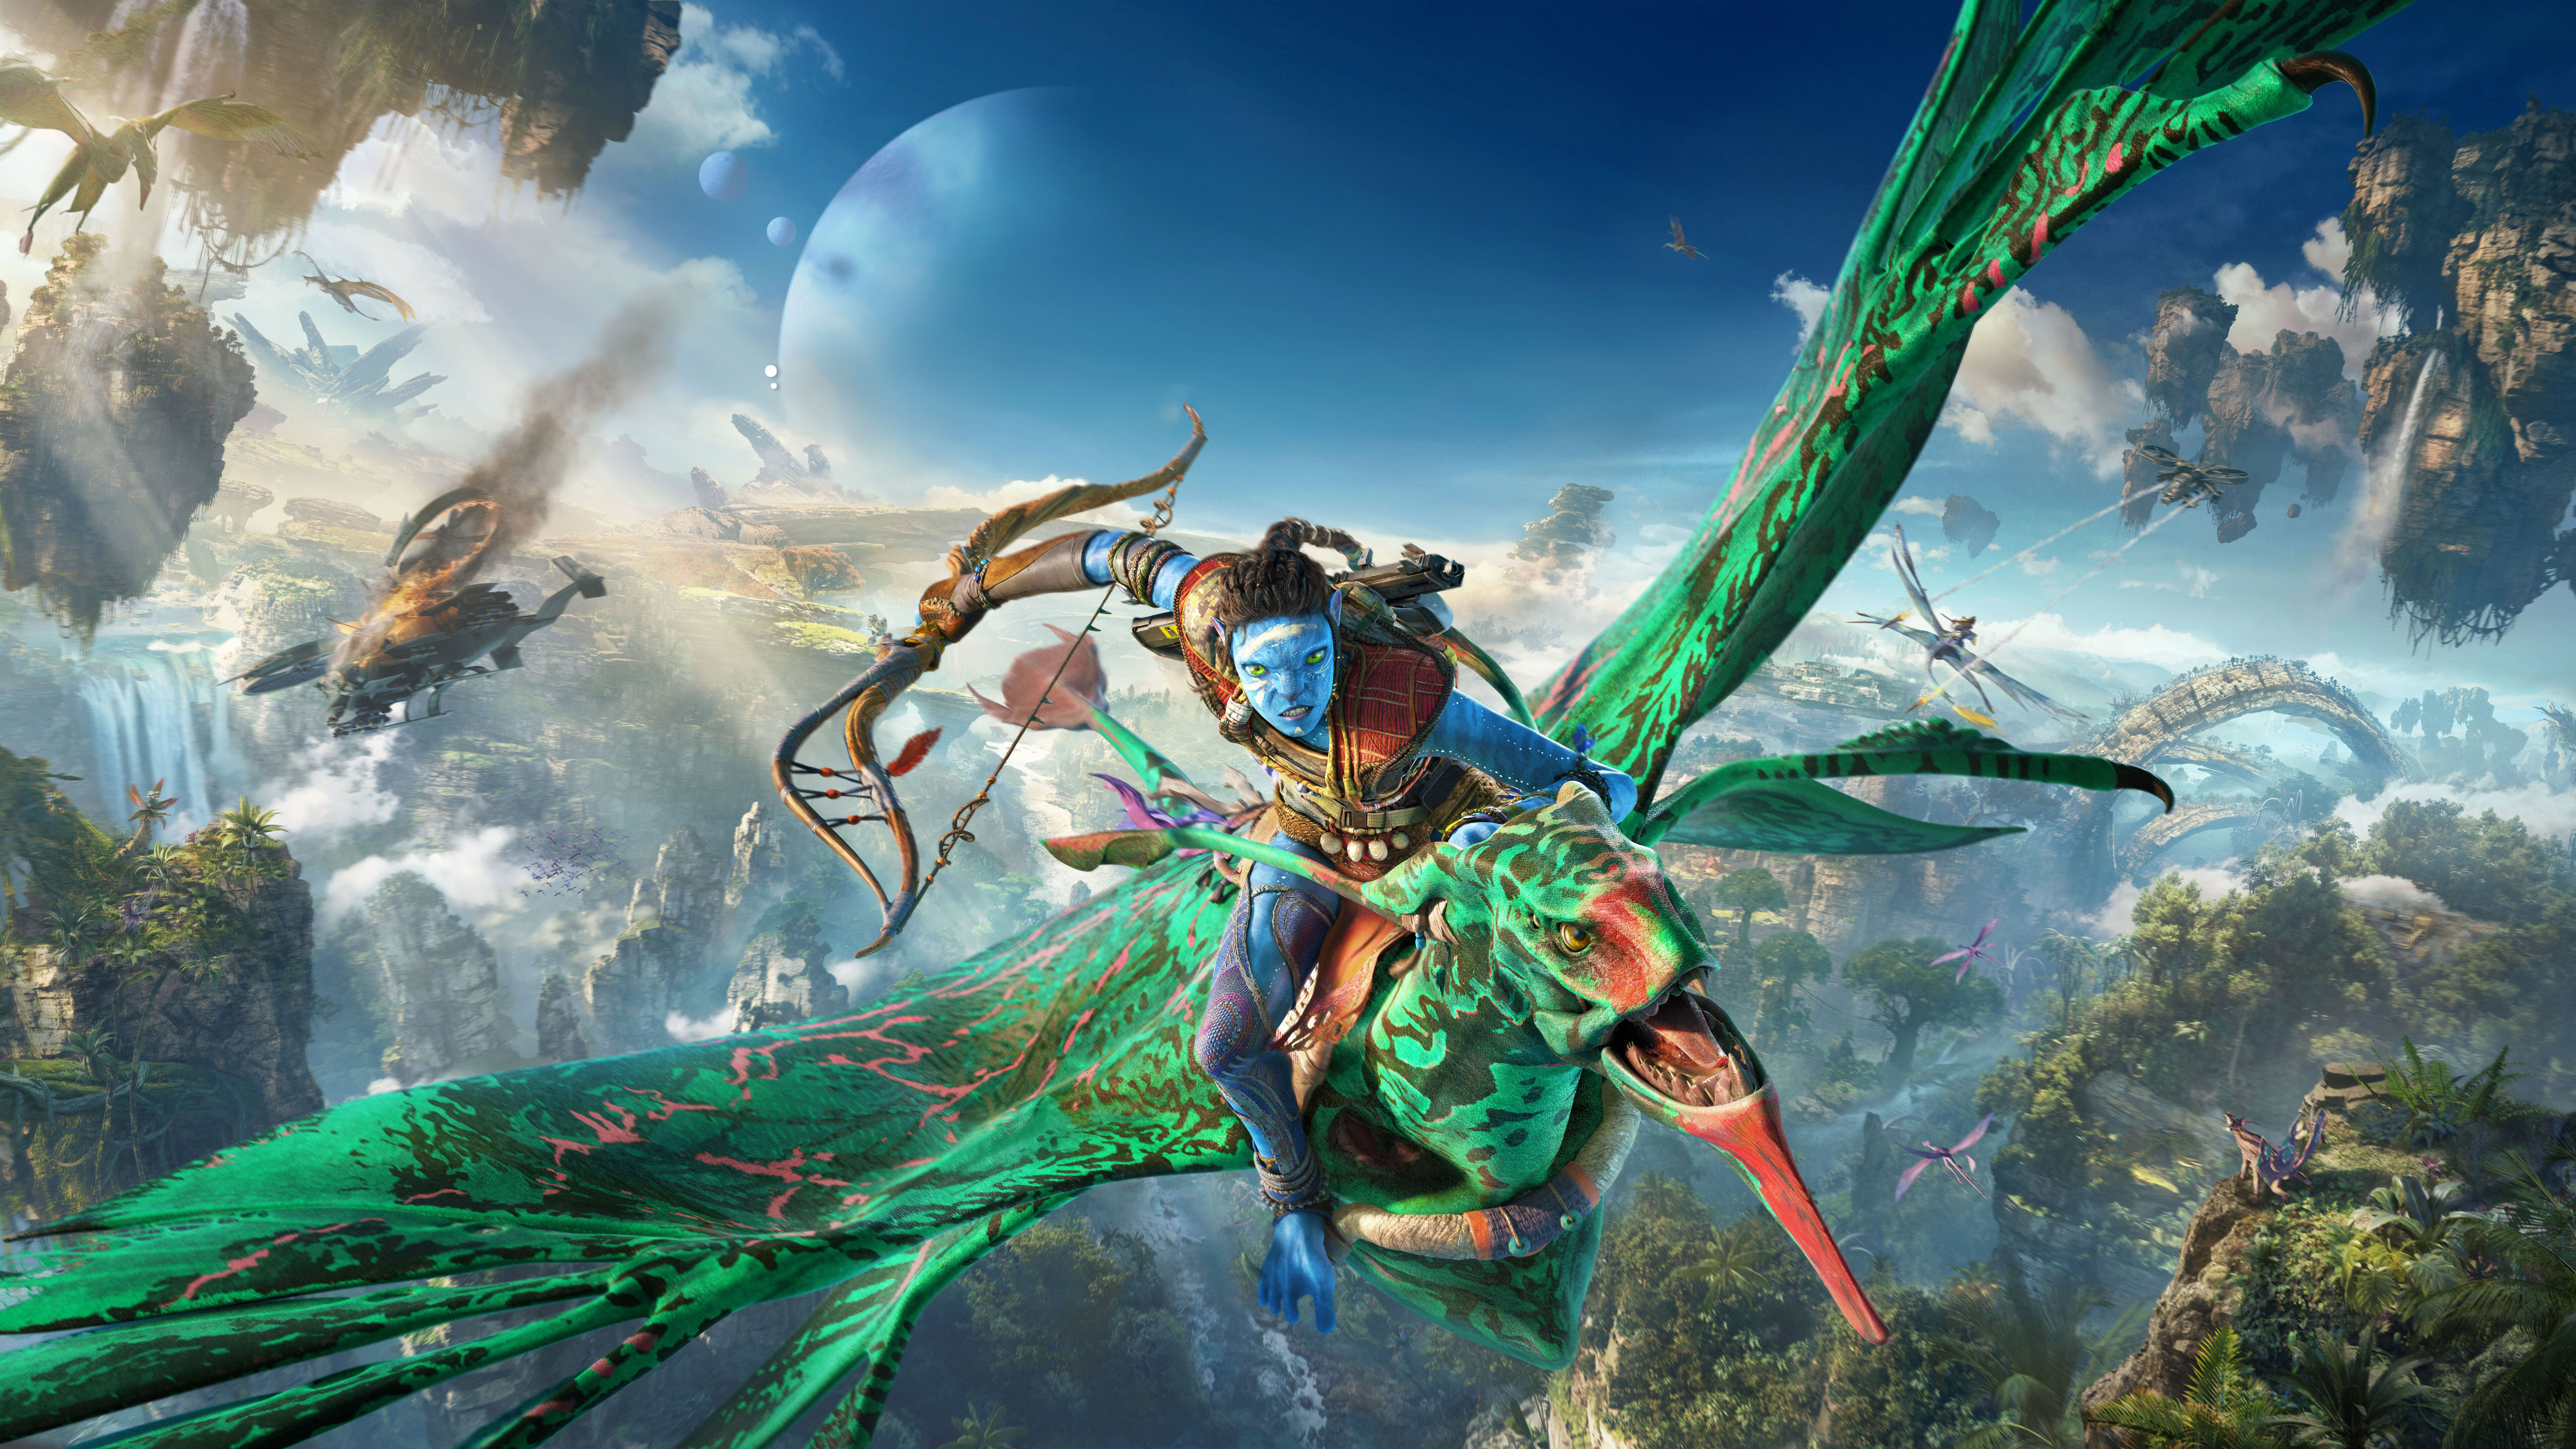 Avatar Frontiers of Pandora Wallpaper 4K 2022 Games Amazon Luna 6807